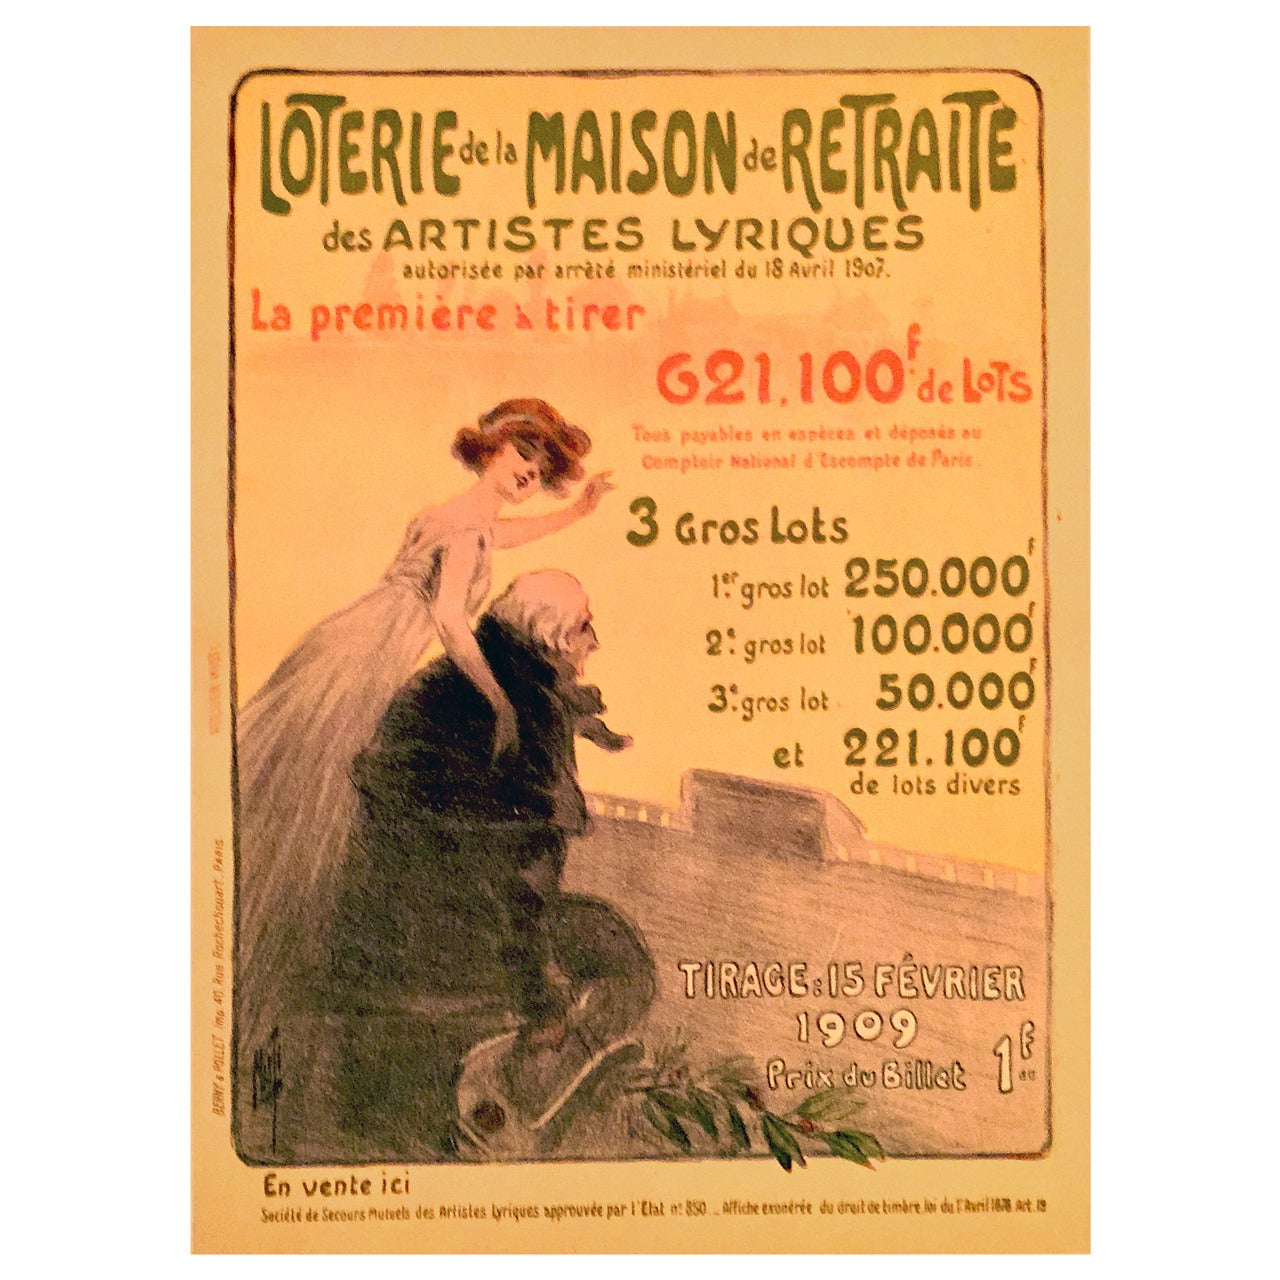 French Art Nouveau Period Poster for the Loterie de la Maison de Retrai, 1909 For Sale